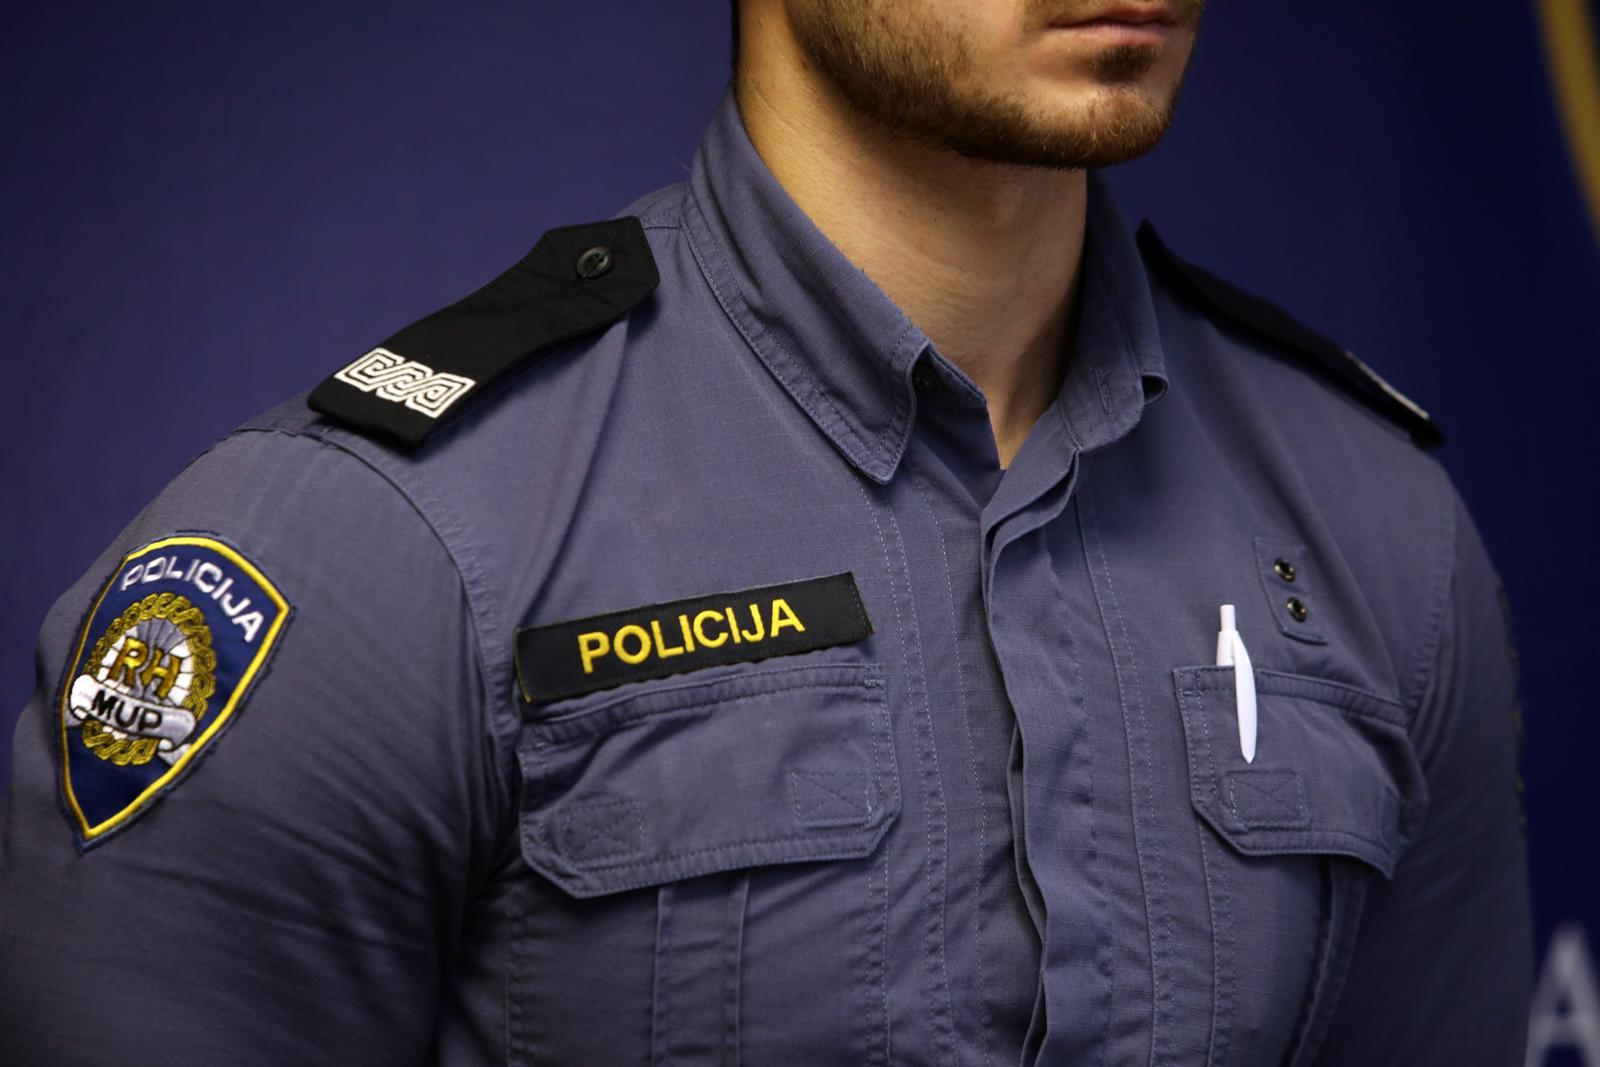 Hrvatski policajac (21) prešutio da je pozvan u vojsku Srbije: Izbačen je iz policije